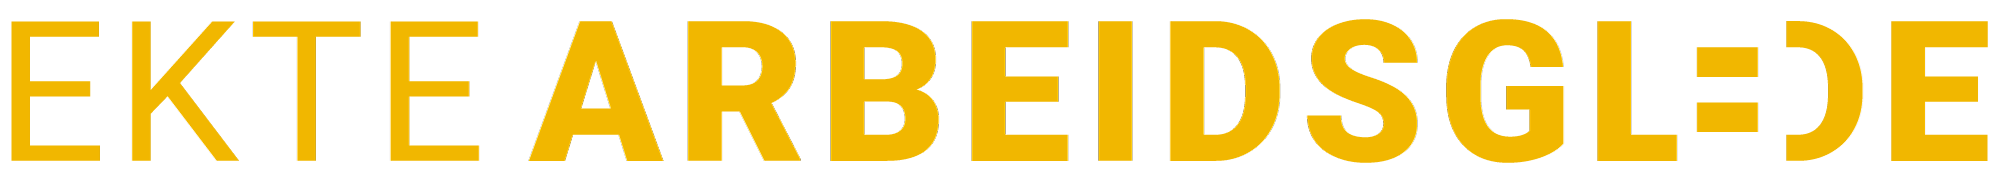 Ekte Arbeidsglede Logo G